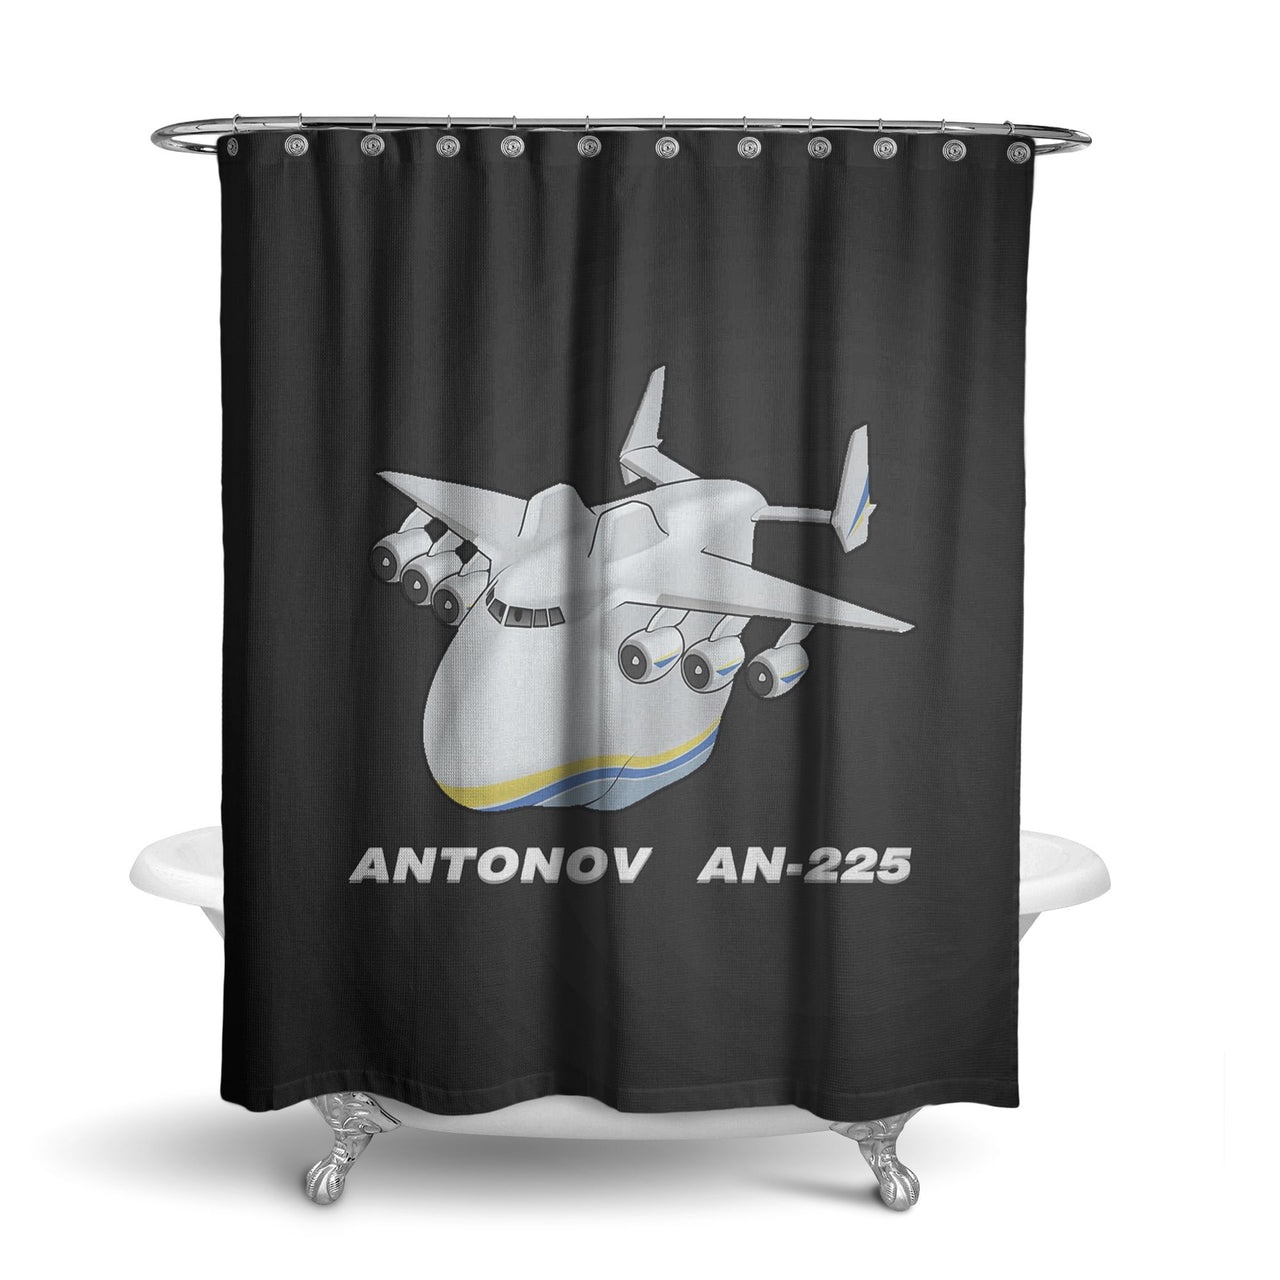 Antonov AN-225 (29) Designed Shower Curtains